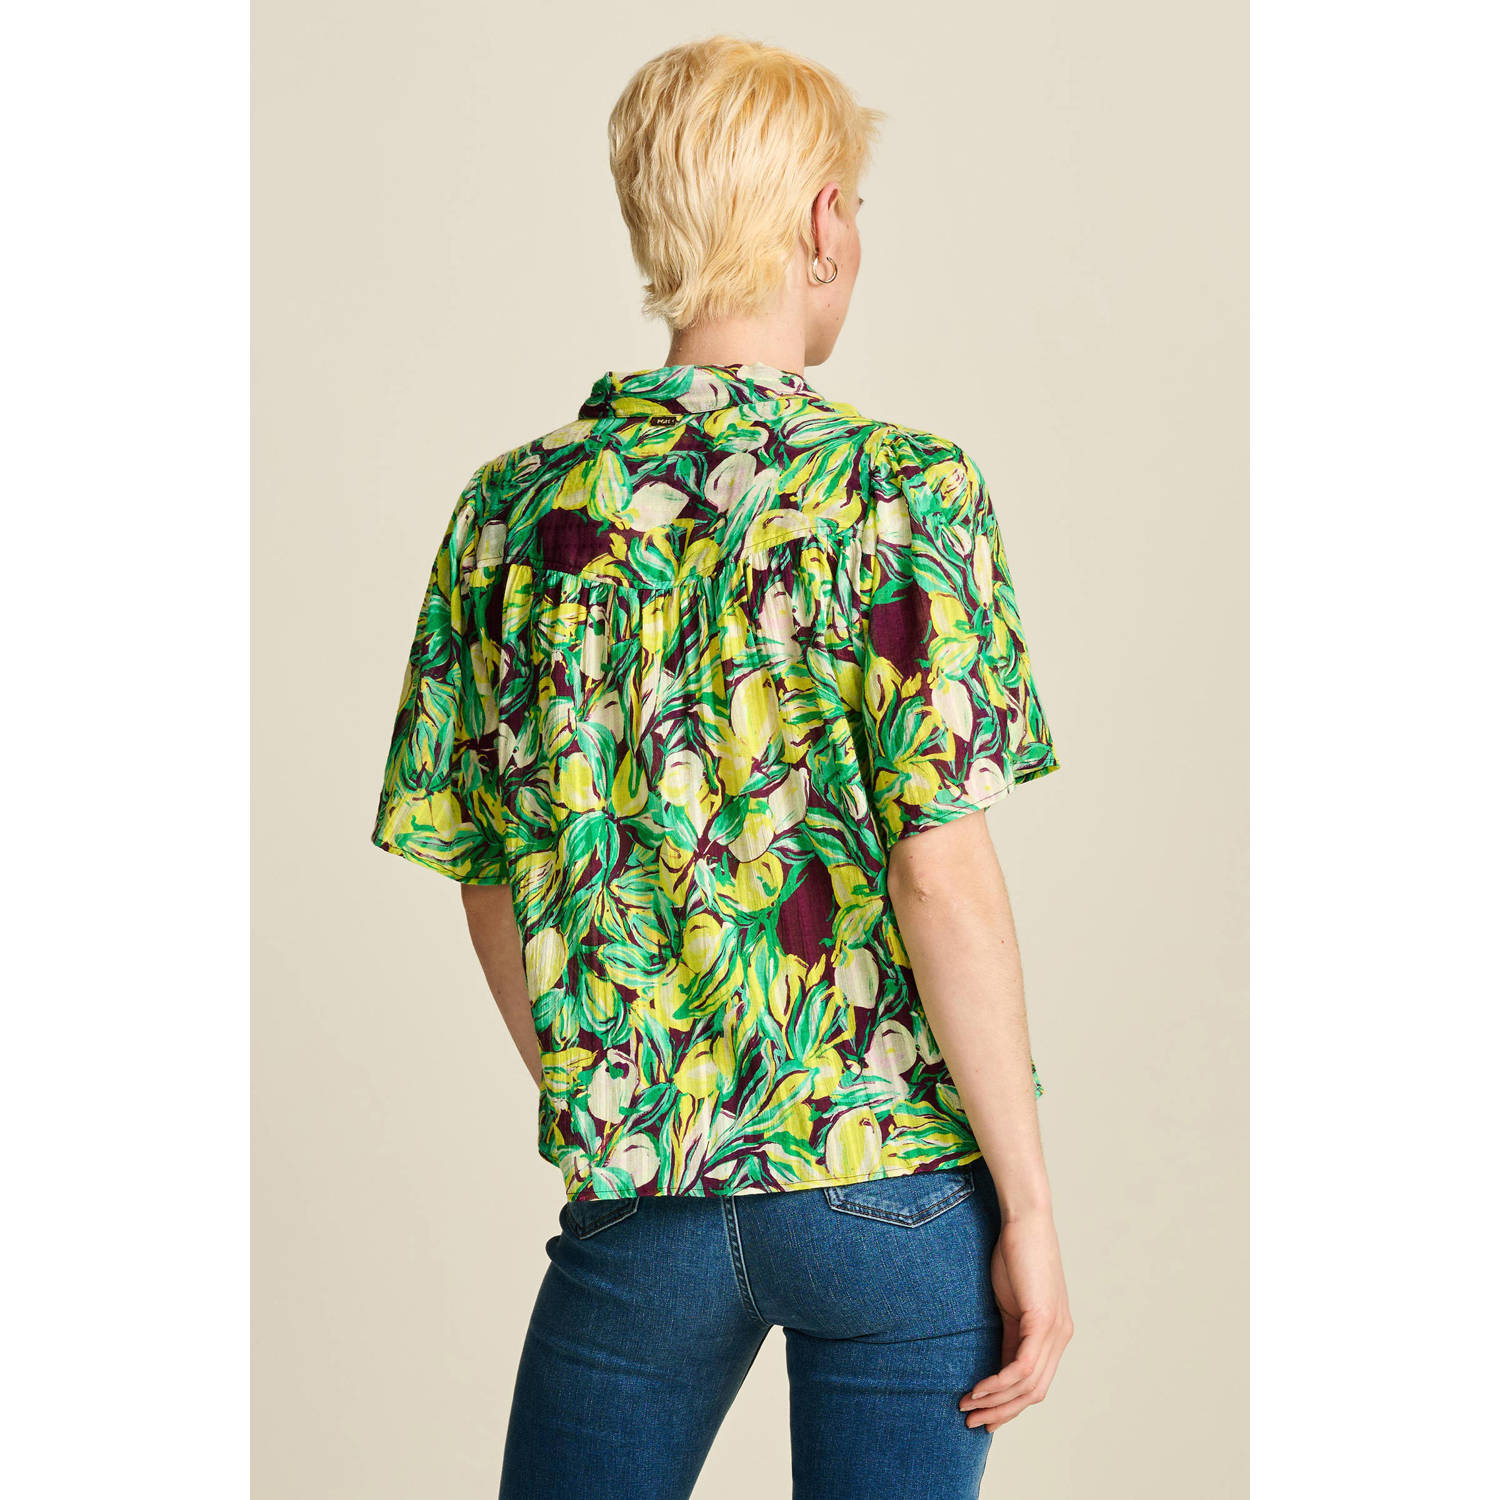 POM Amsterdam blouse met all over print groen geel